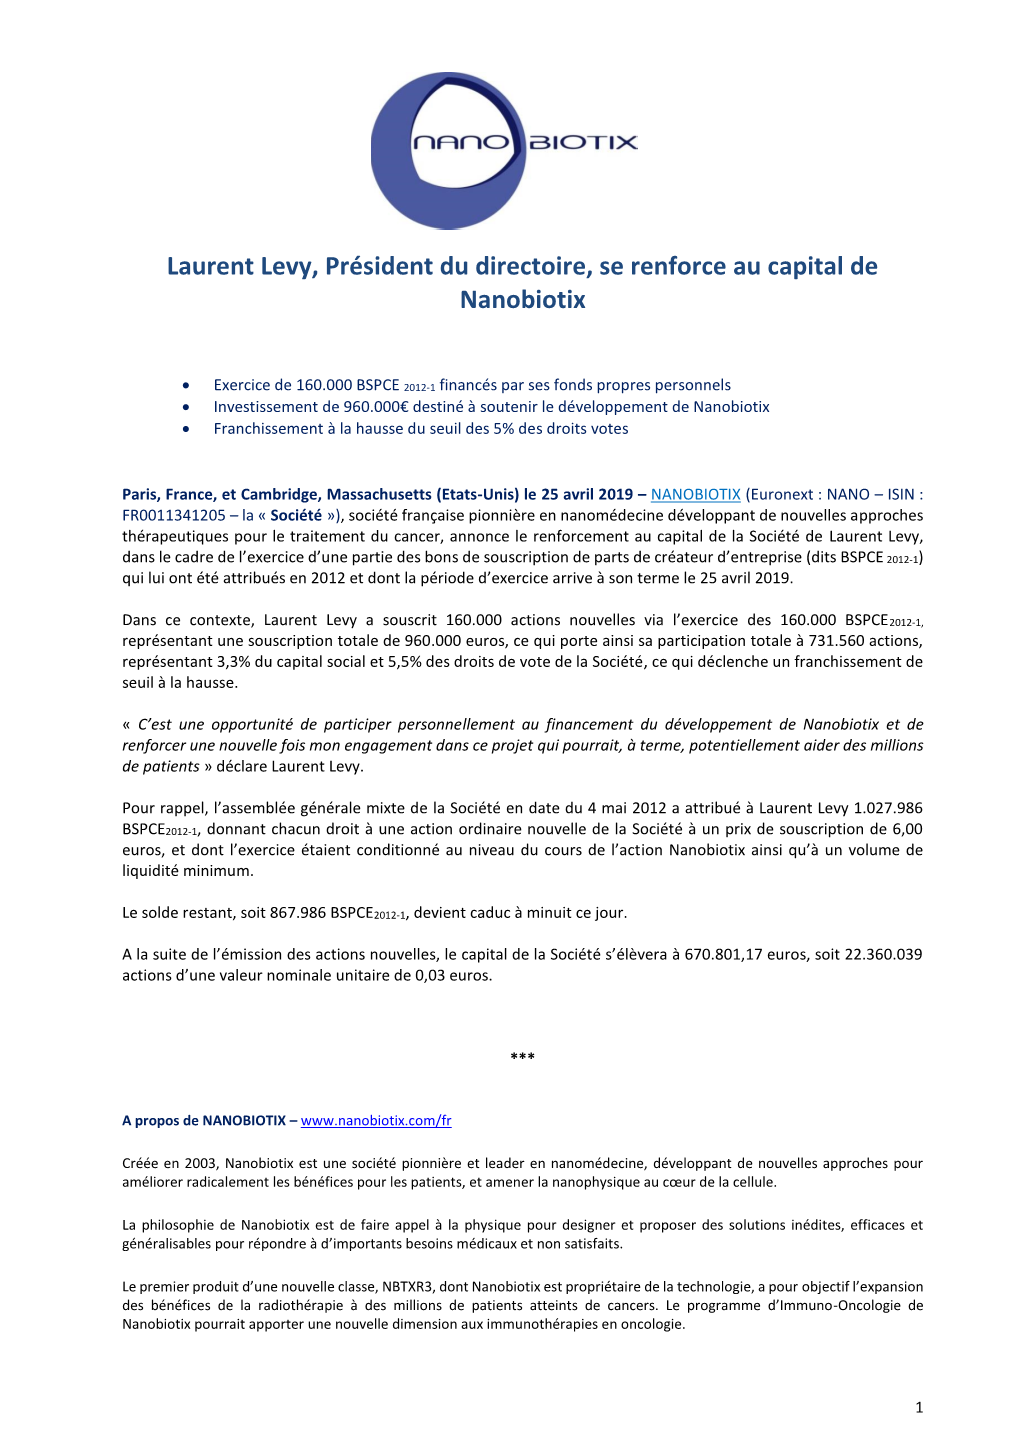 Laurent Levy, Président Du Directoire, Se Renforce Au Capital De Nanobiotix